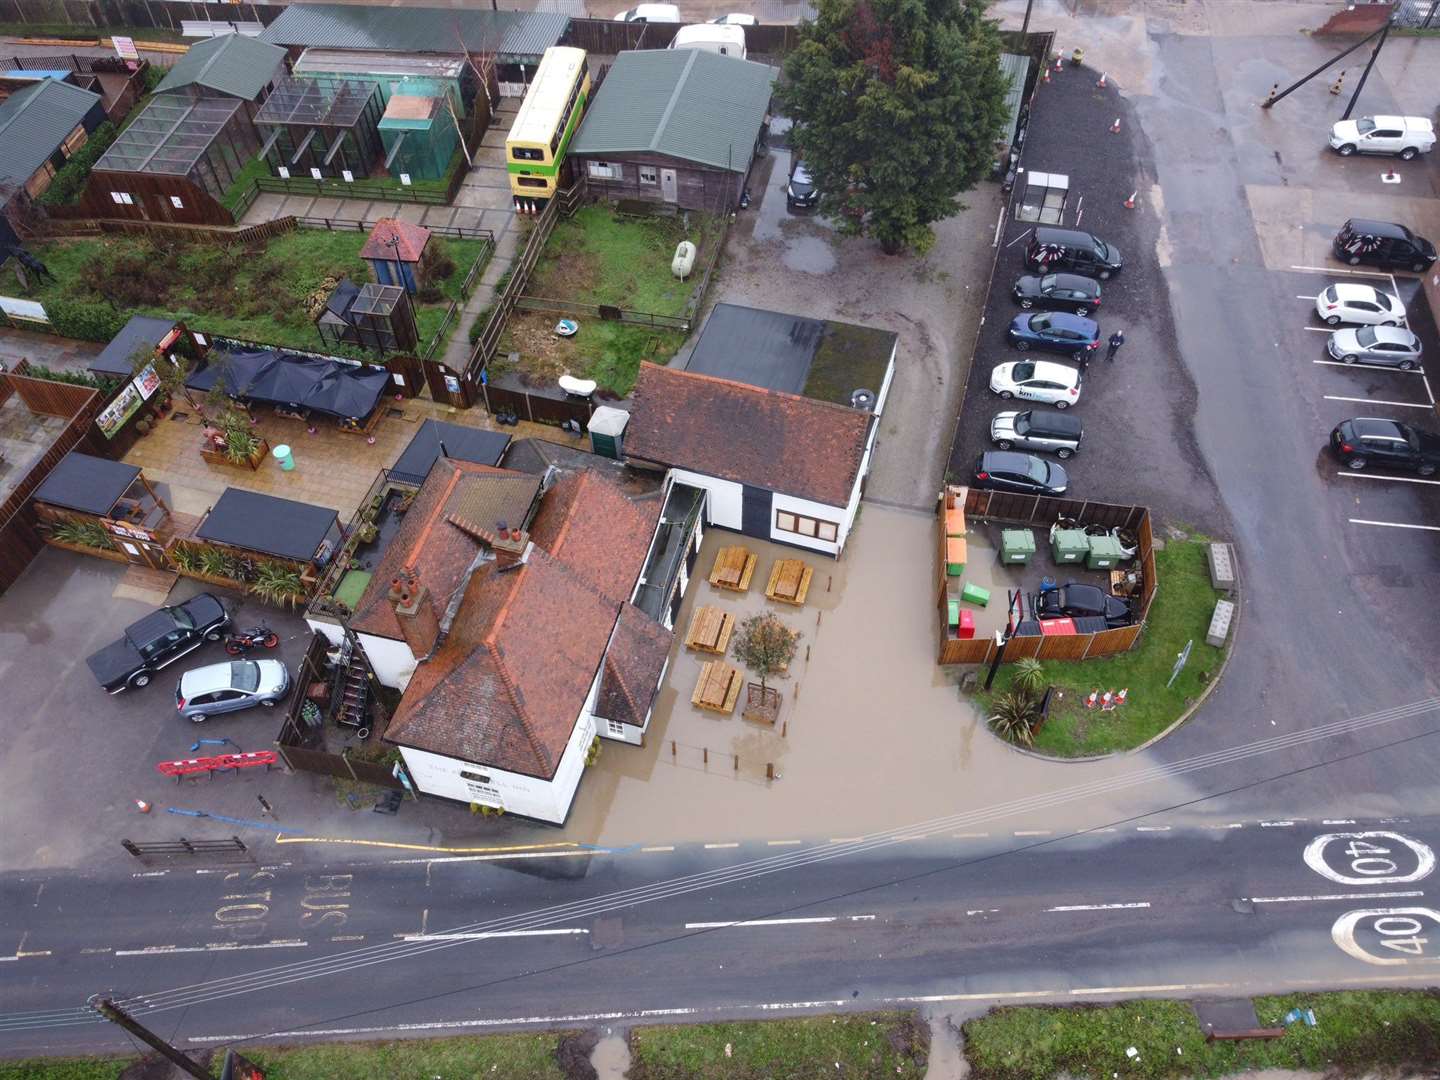 Flooding at the Fenn Bell Inn in January